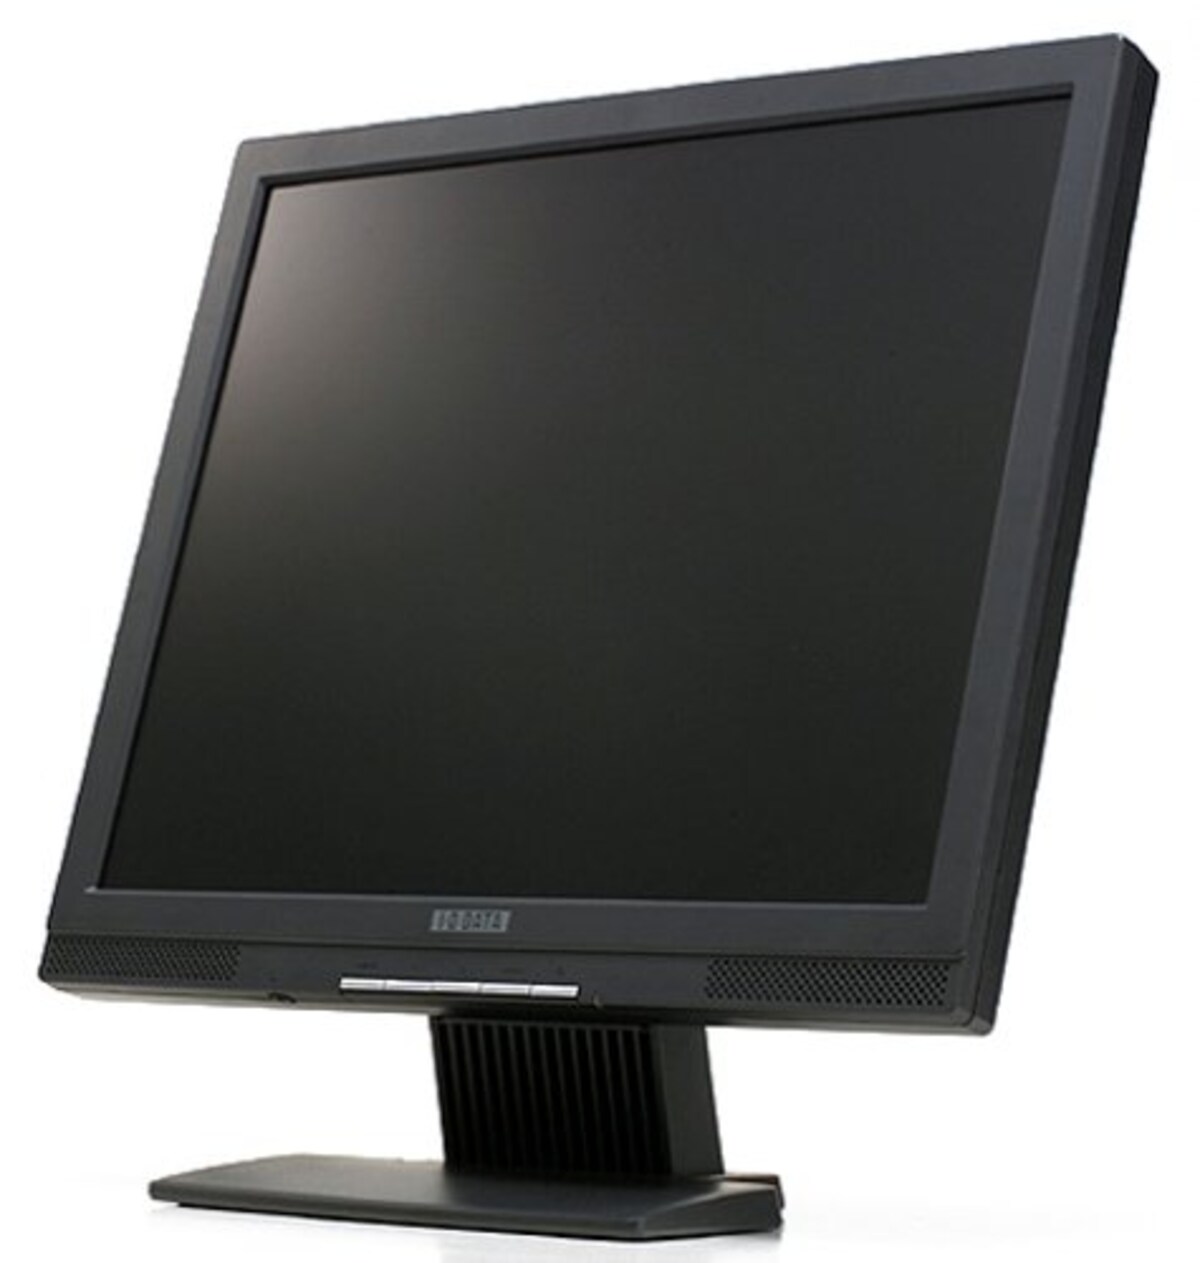 I-O DATA 17インチ液晶ディスプレイ LCD-A173VB ブラック (SXGA, アナログ, スピーカー内蔵)